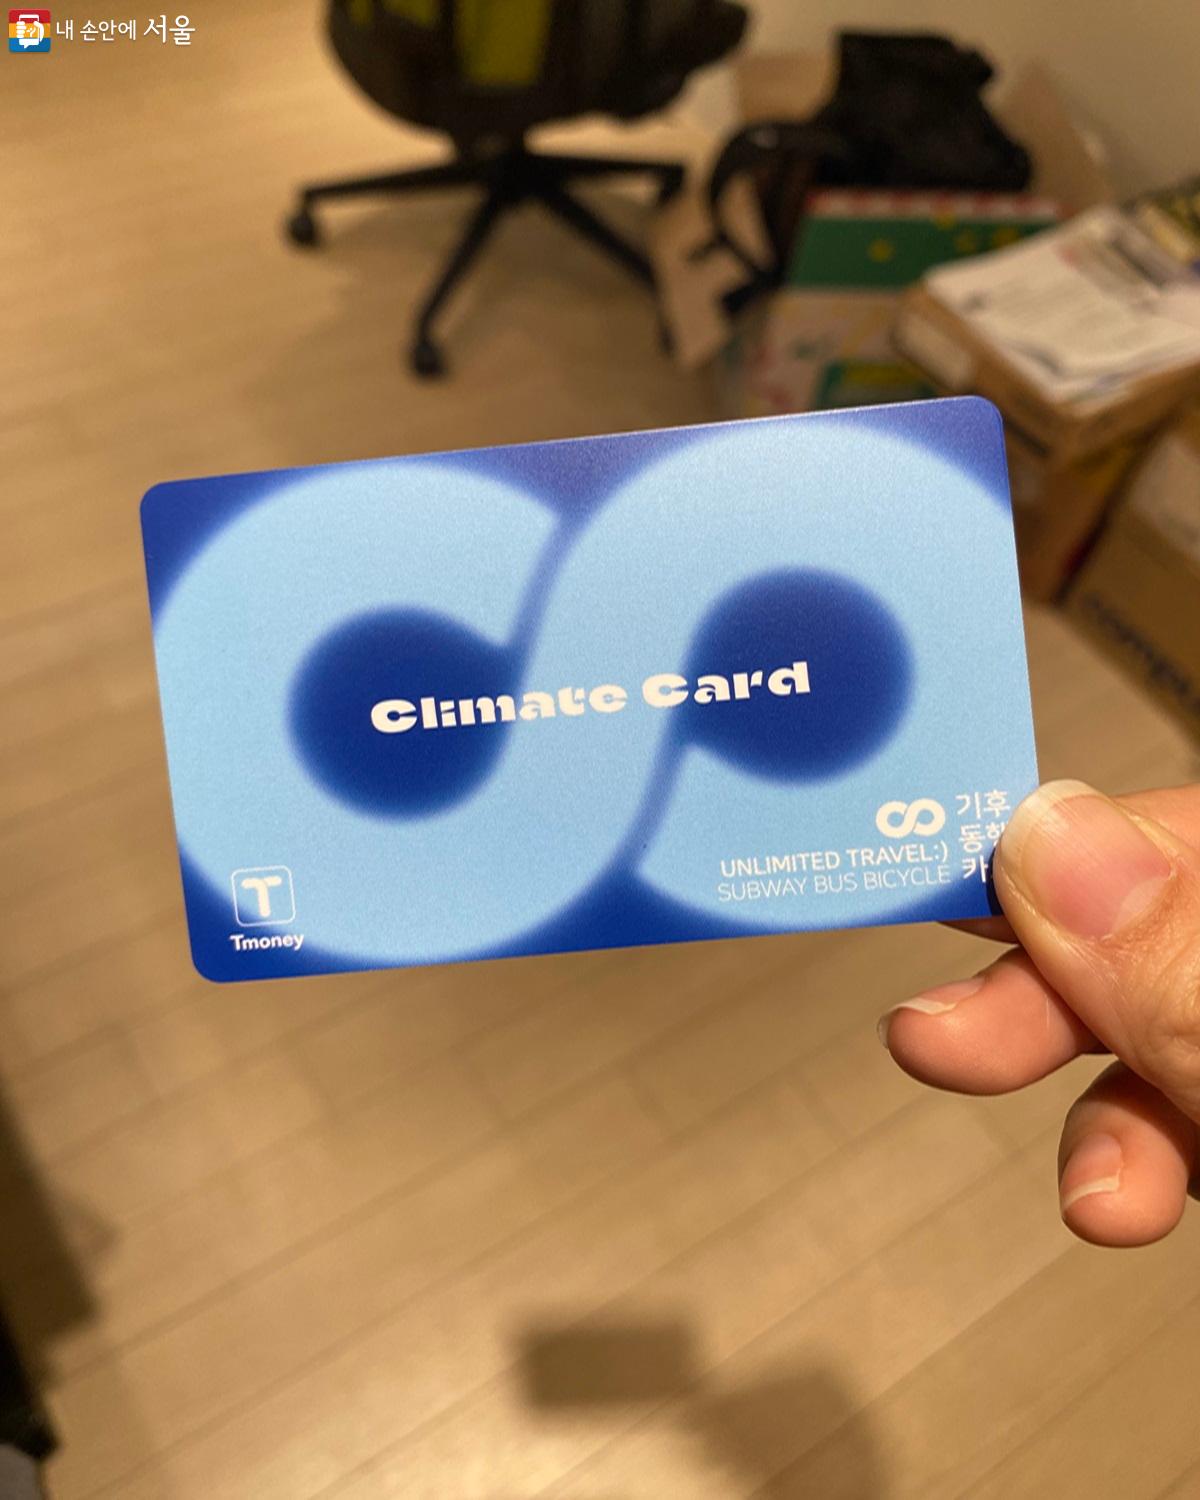 기후동행카드는 실물 카드 또는 모바일 카드로 발급 가능하다. ©강다영